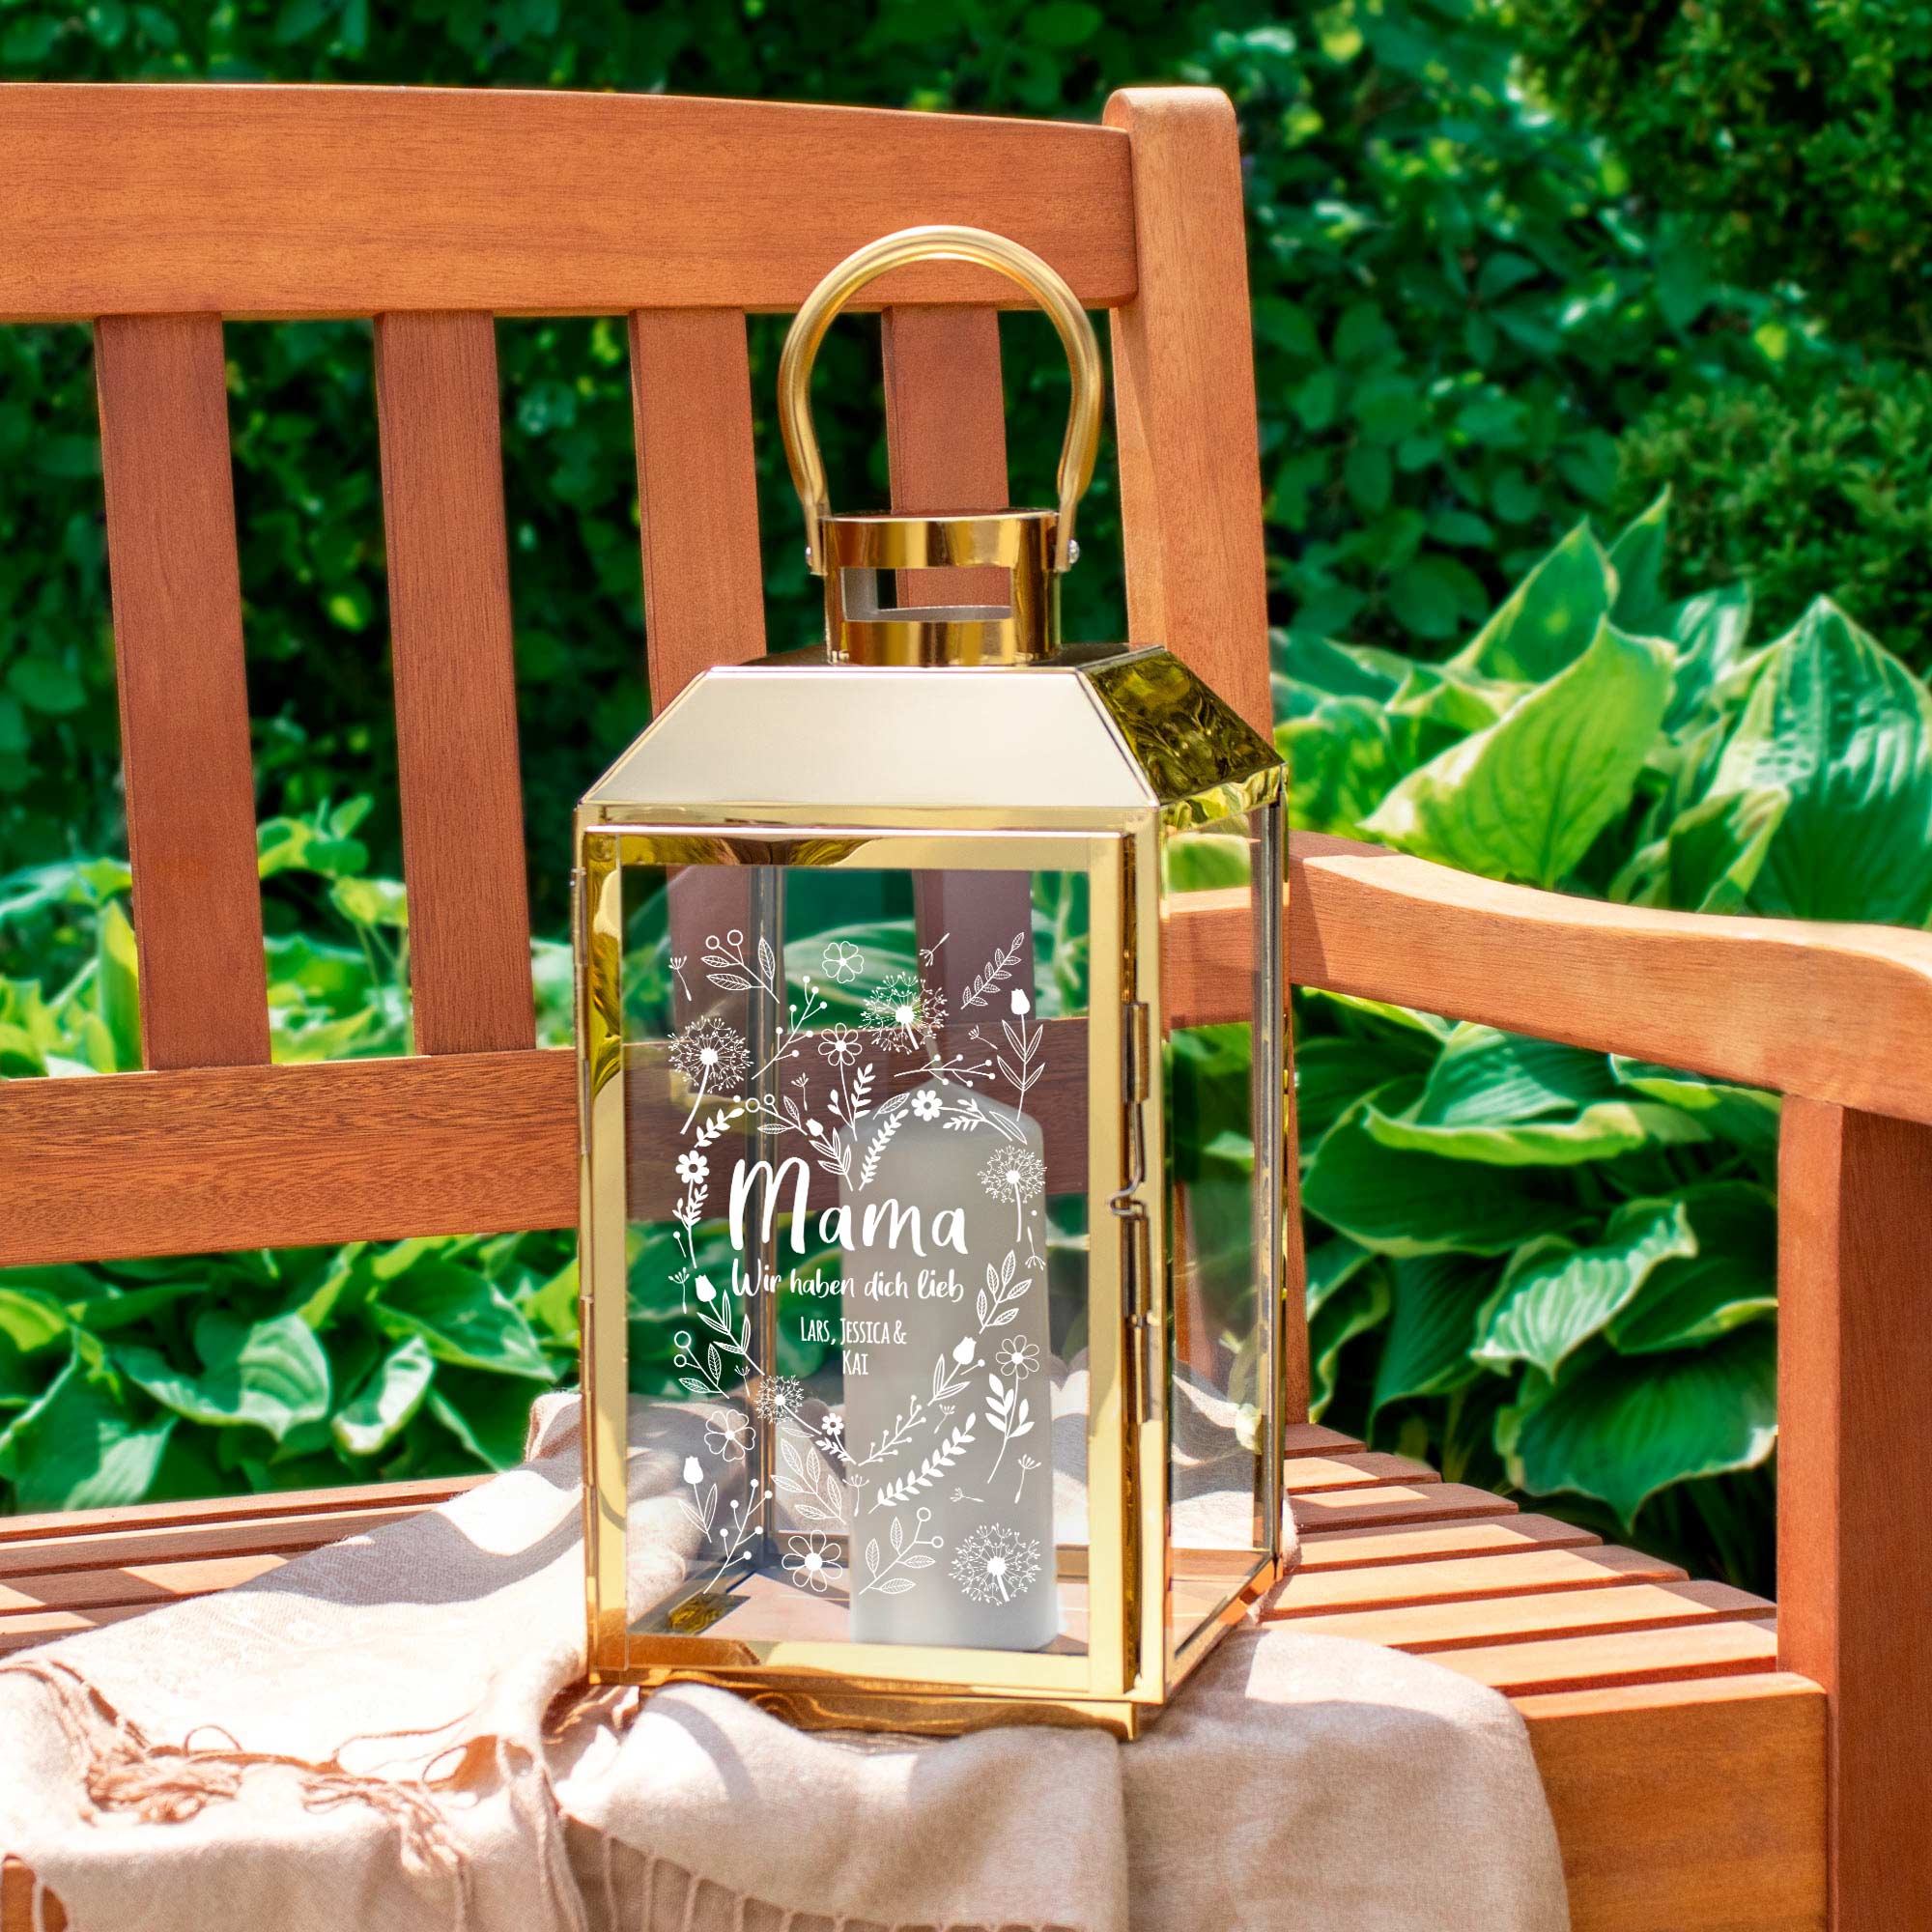 Die Personalisierte Gold Laterne - Blumenherz für Mama ist eine Outdoor Dekoration für draußen, wetterfest, als Windlicht ein tolles Muttertagsgesc